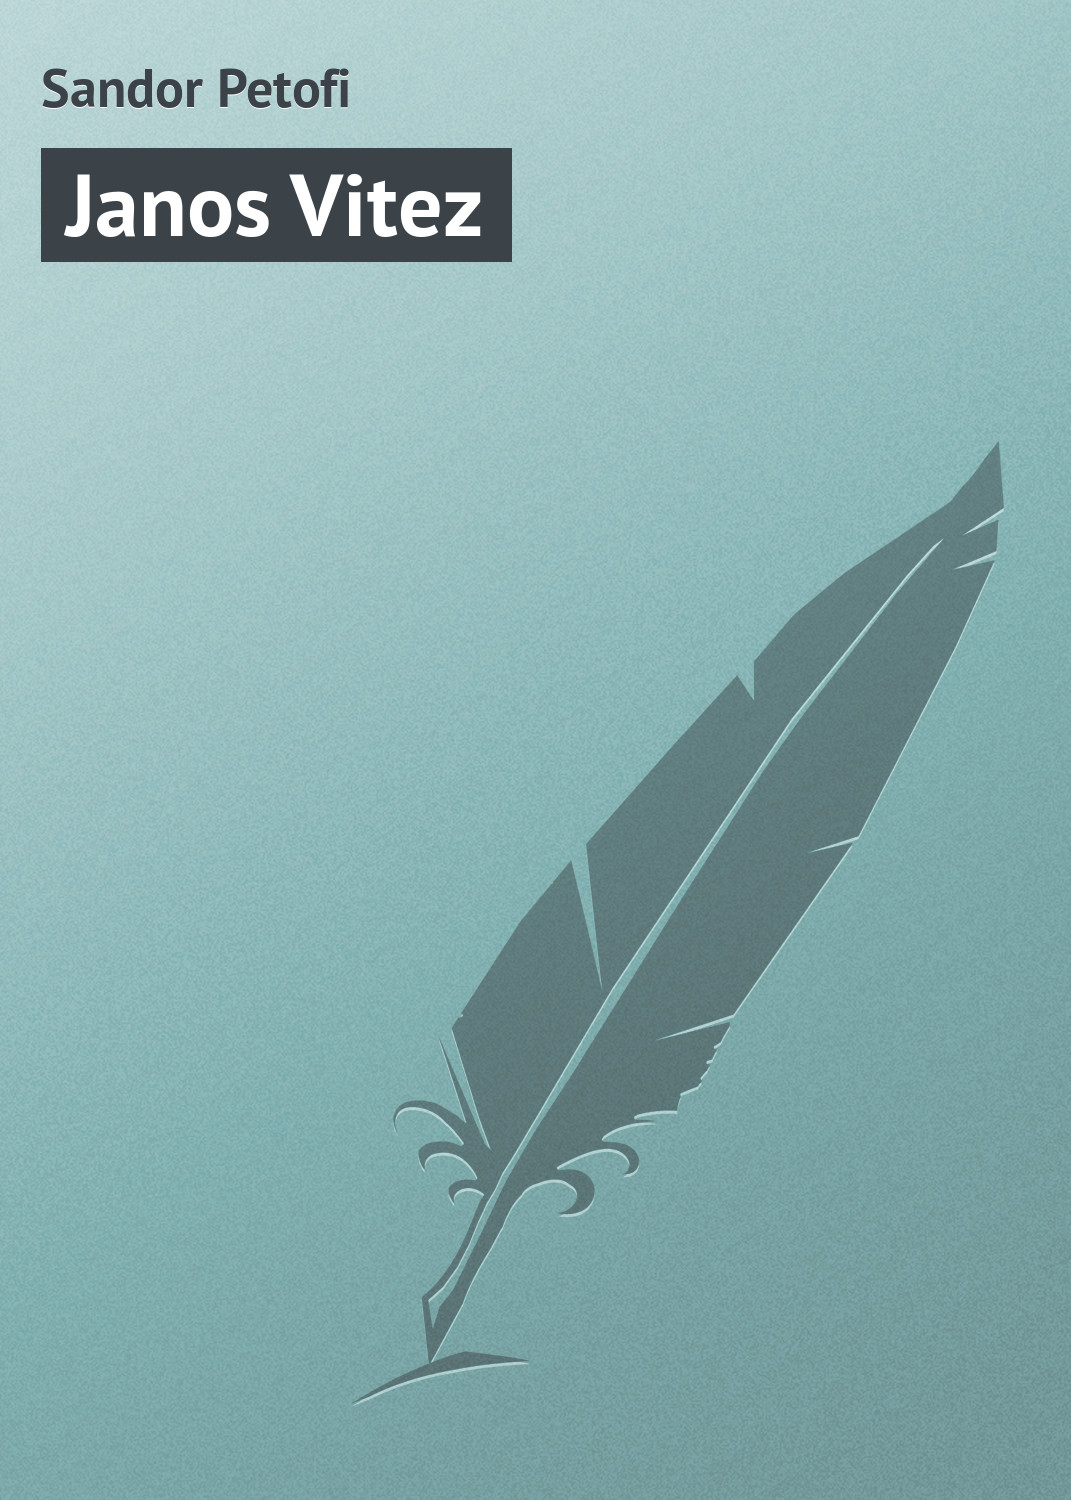 Книга Janos Vitez из серии , созданная Sandor Petofi, может относится к жанру Зарубежная старинная литература, Зарубежная классика. Стоимость электронной книги Janos Vitez с идентификатором 21102734 составляет 5.99 руб.